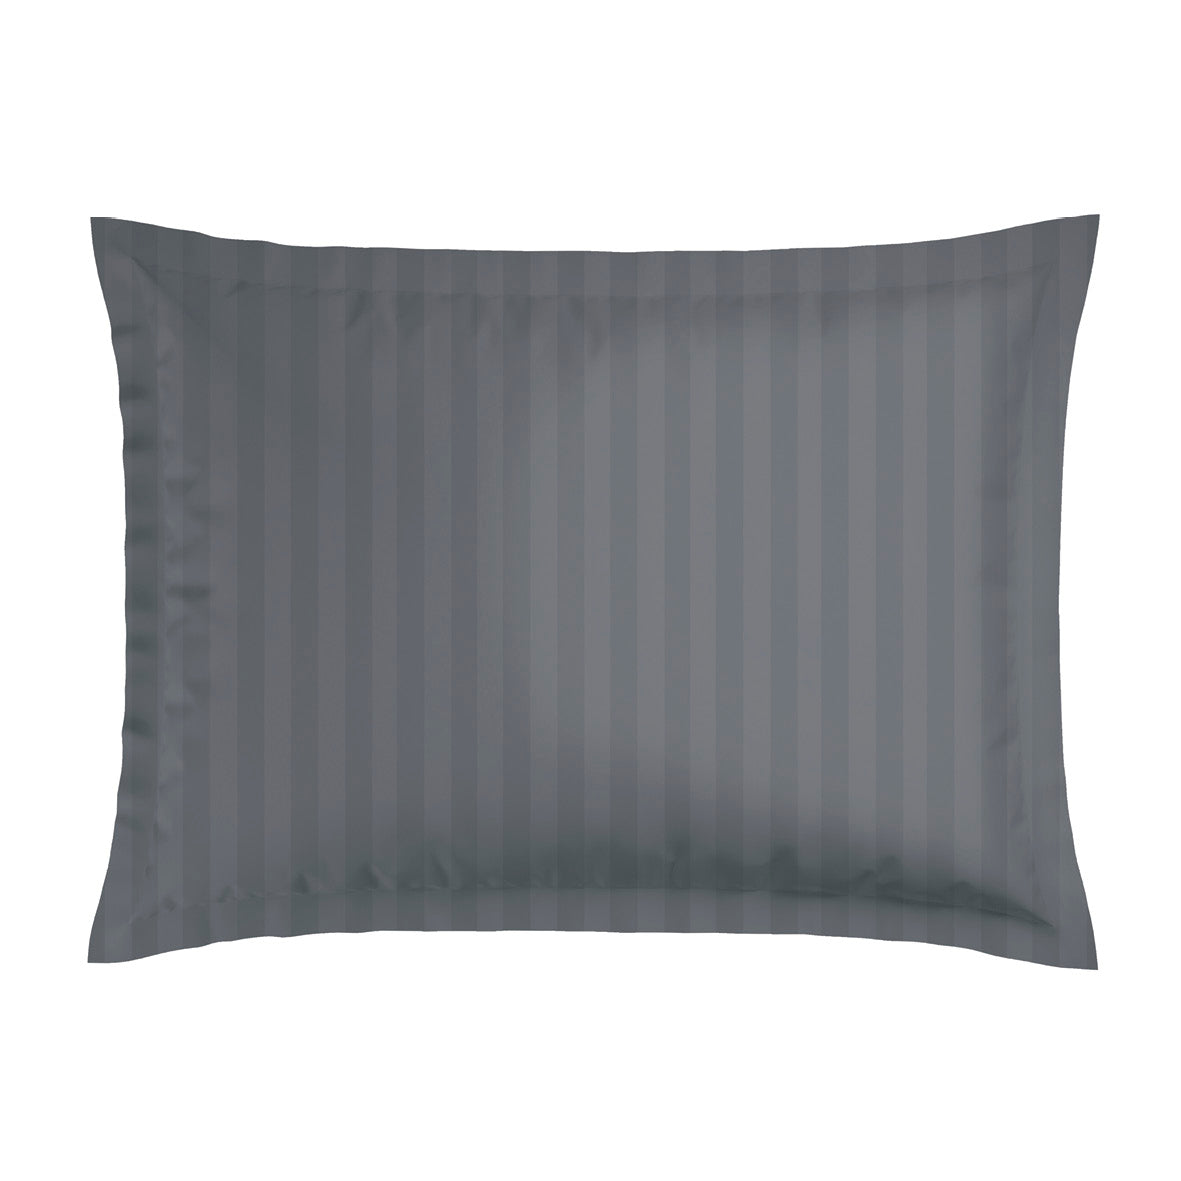 Pillowcase(s) cotton satin dobby stripe woven - Dark Grey 2 x (50 x 70 cm)